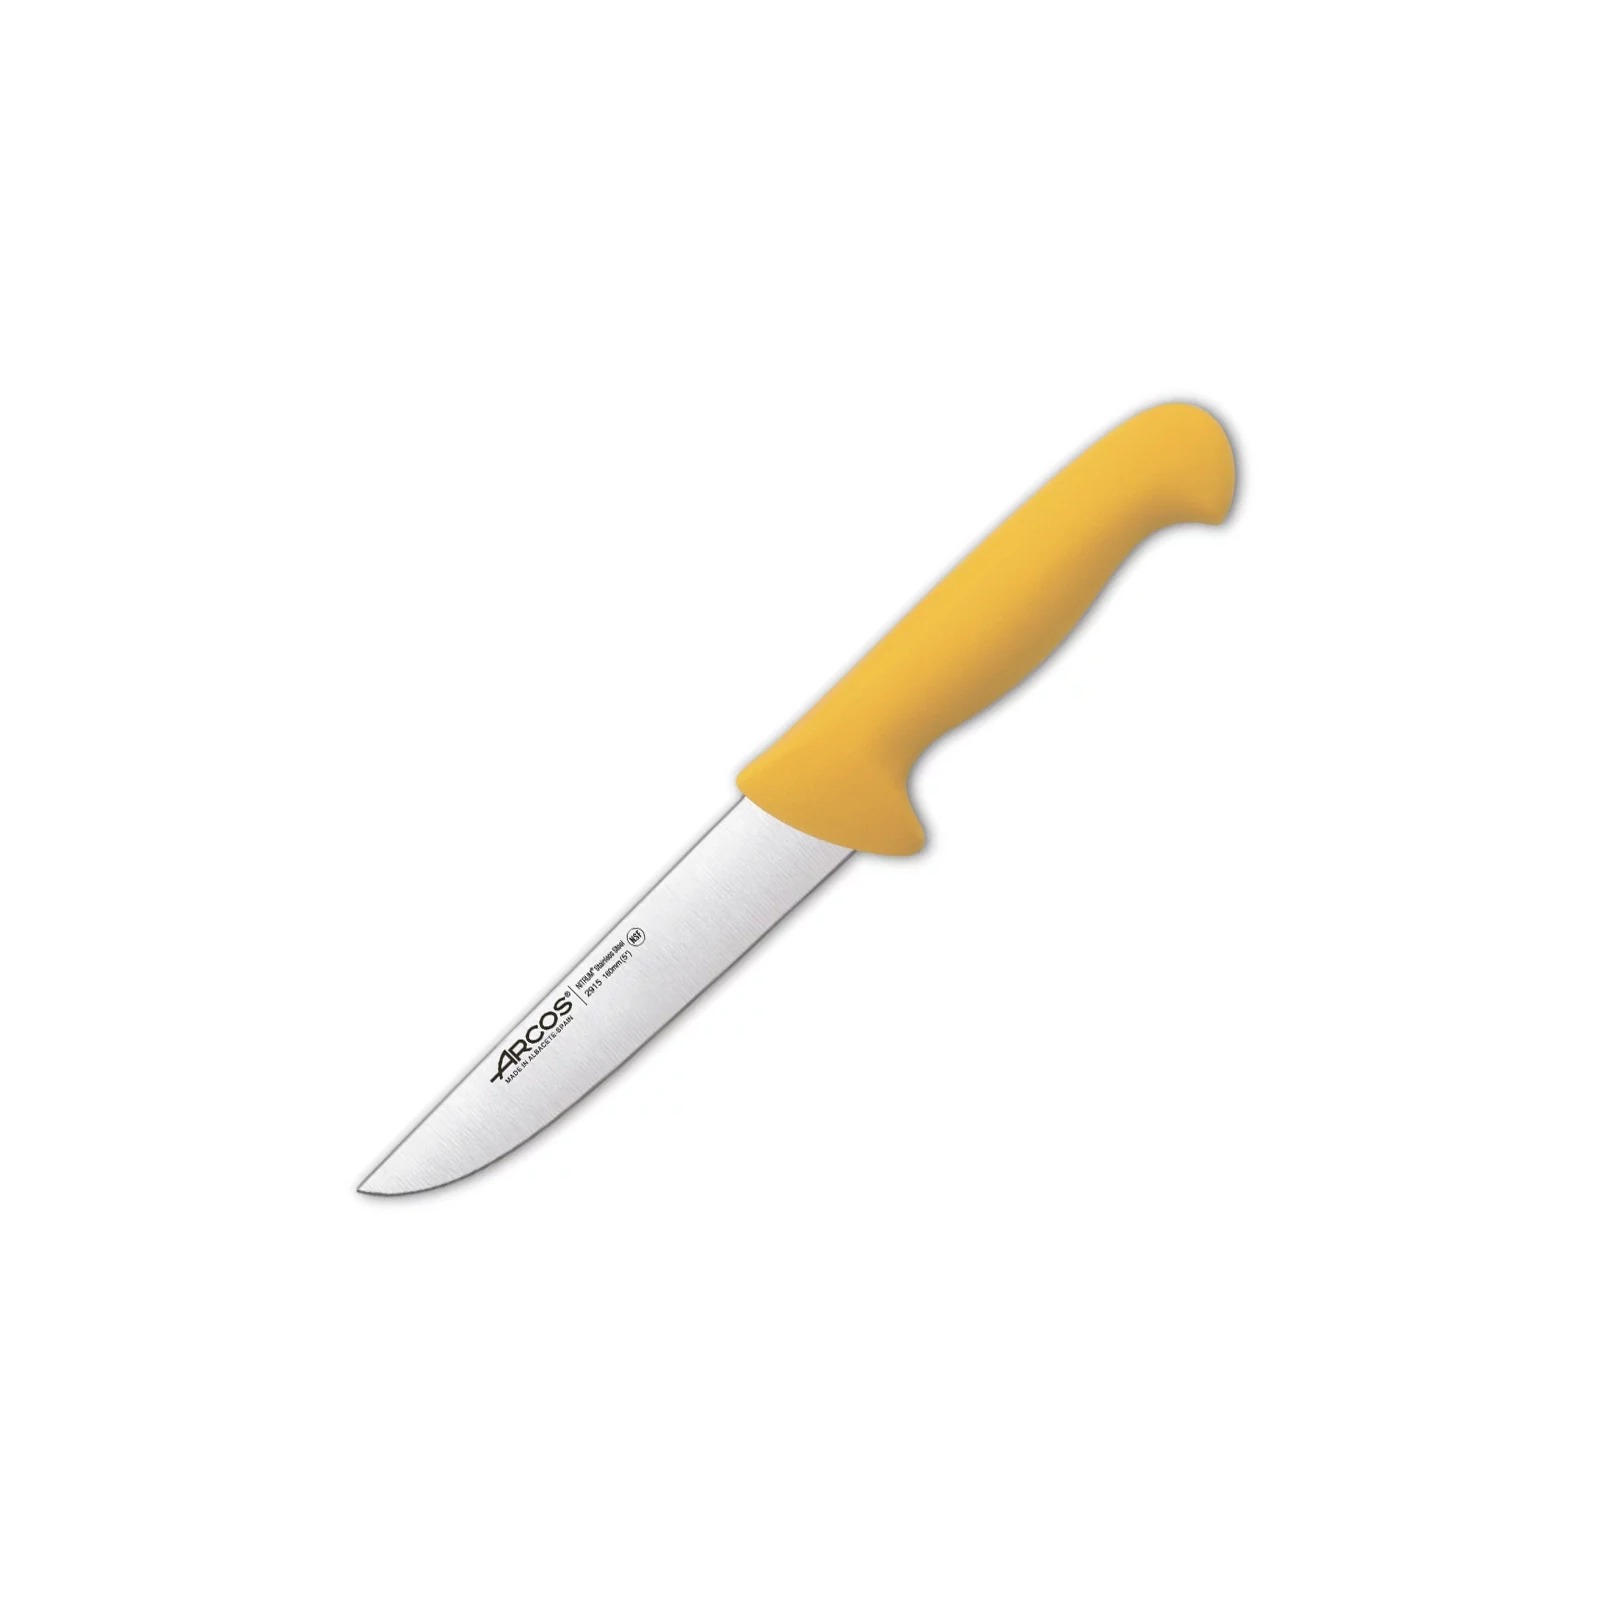 Кухонный нож Arcos серія "2900" для м'яса 160 мм Жовтий (291500)